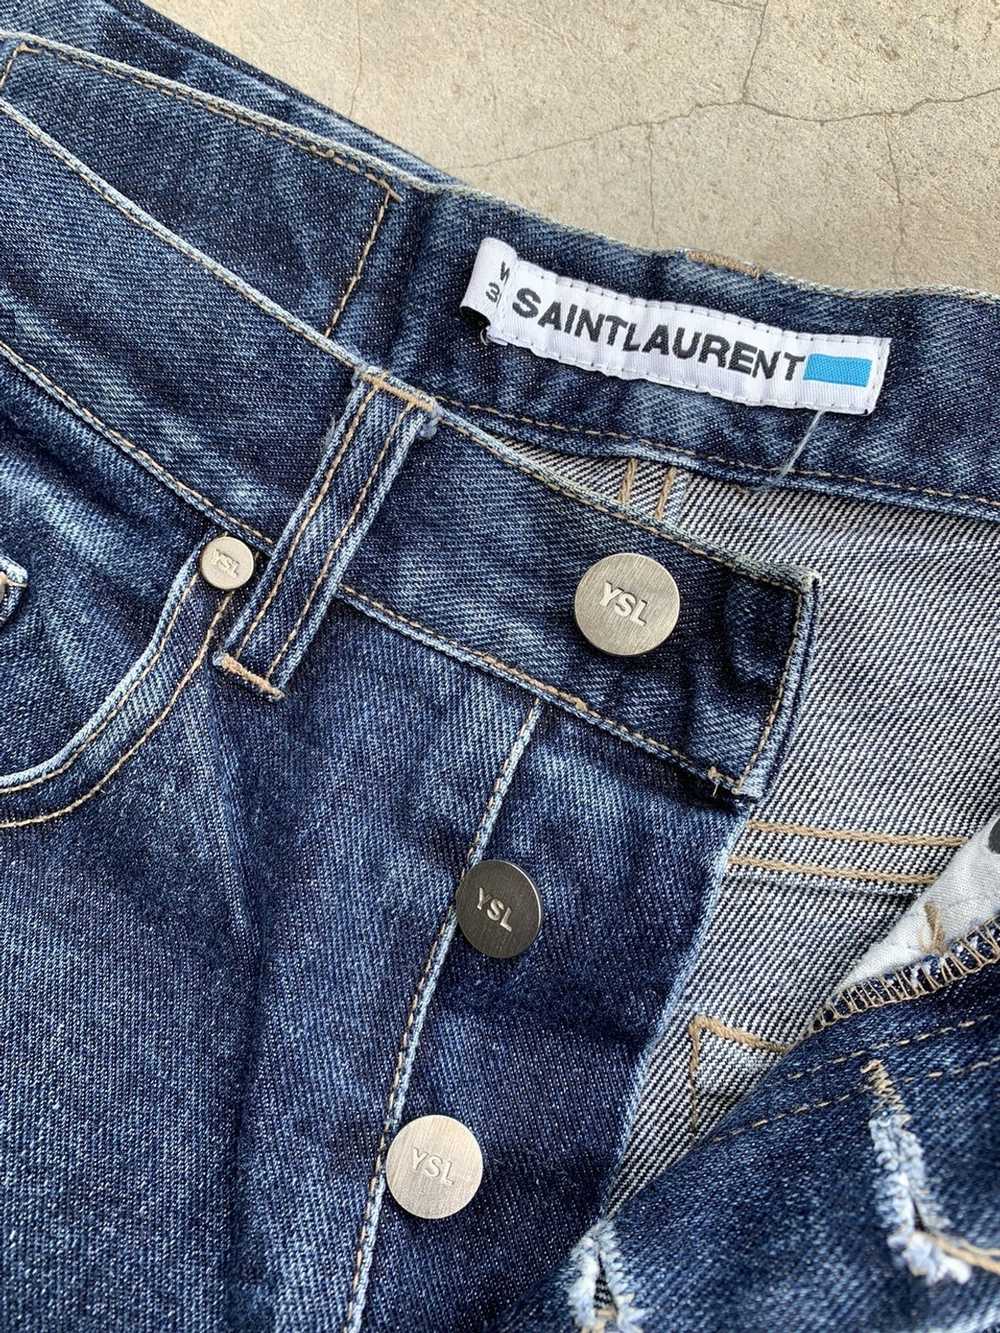 Saint Laurent Paris × Yves Saint Laurent Vintage … - image 7